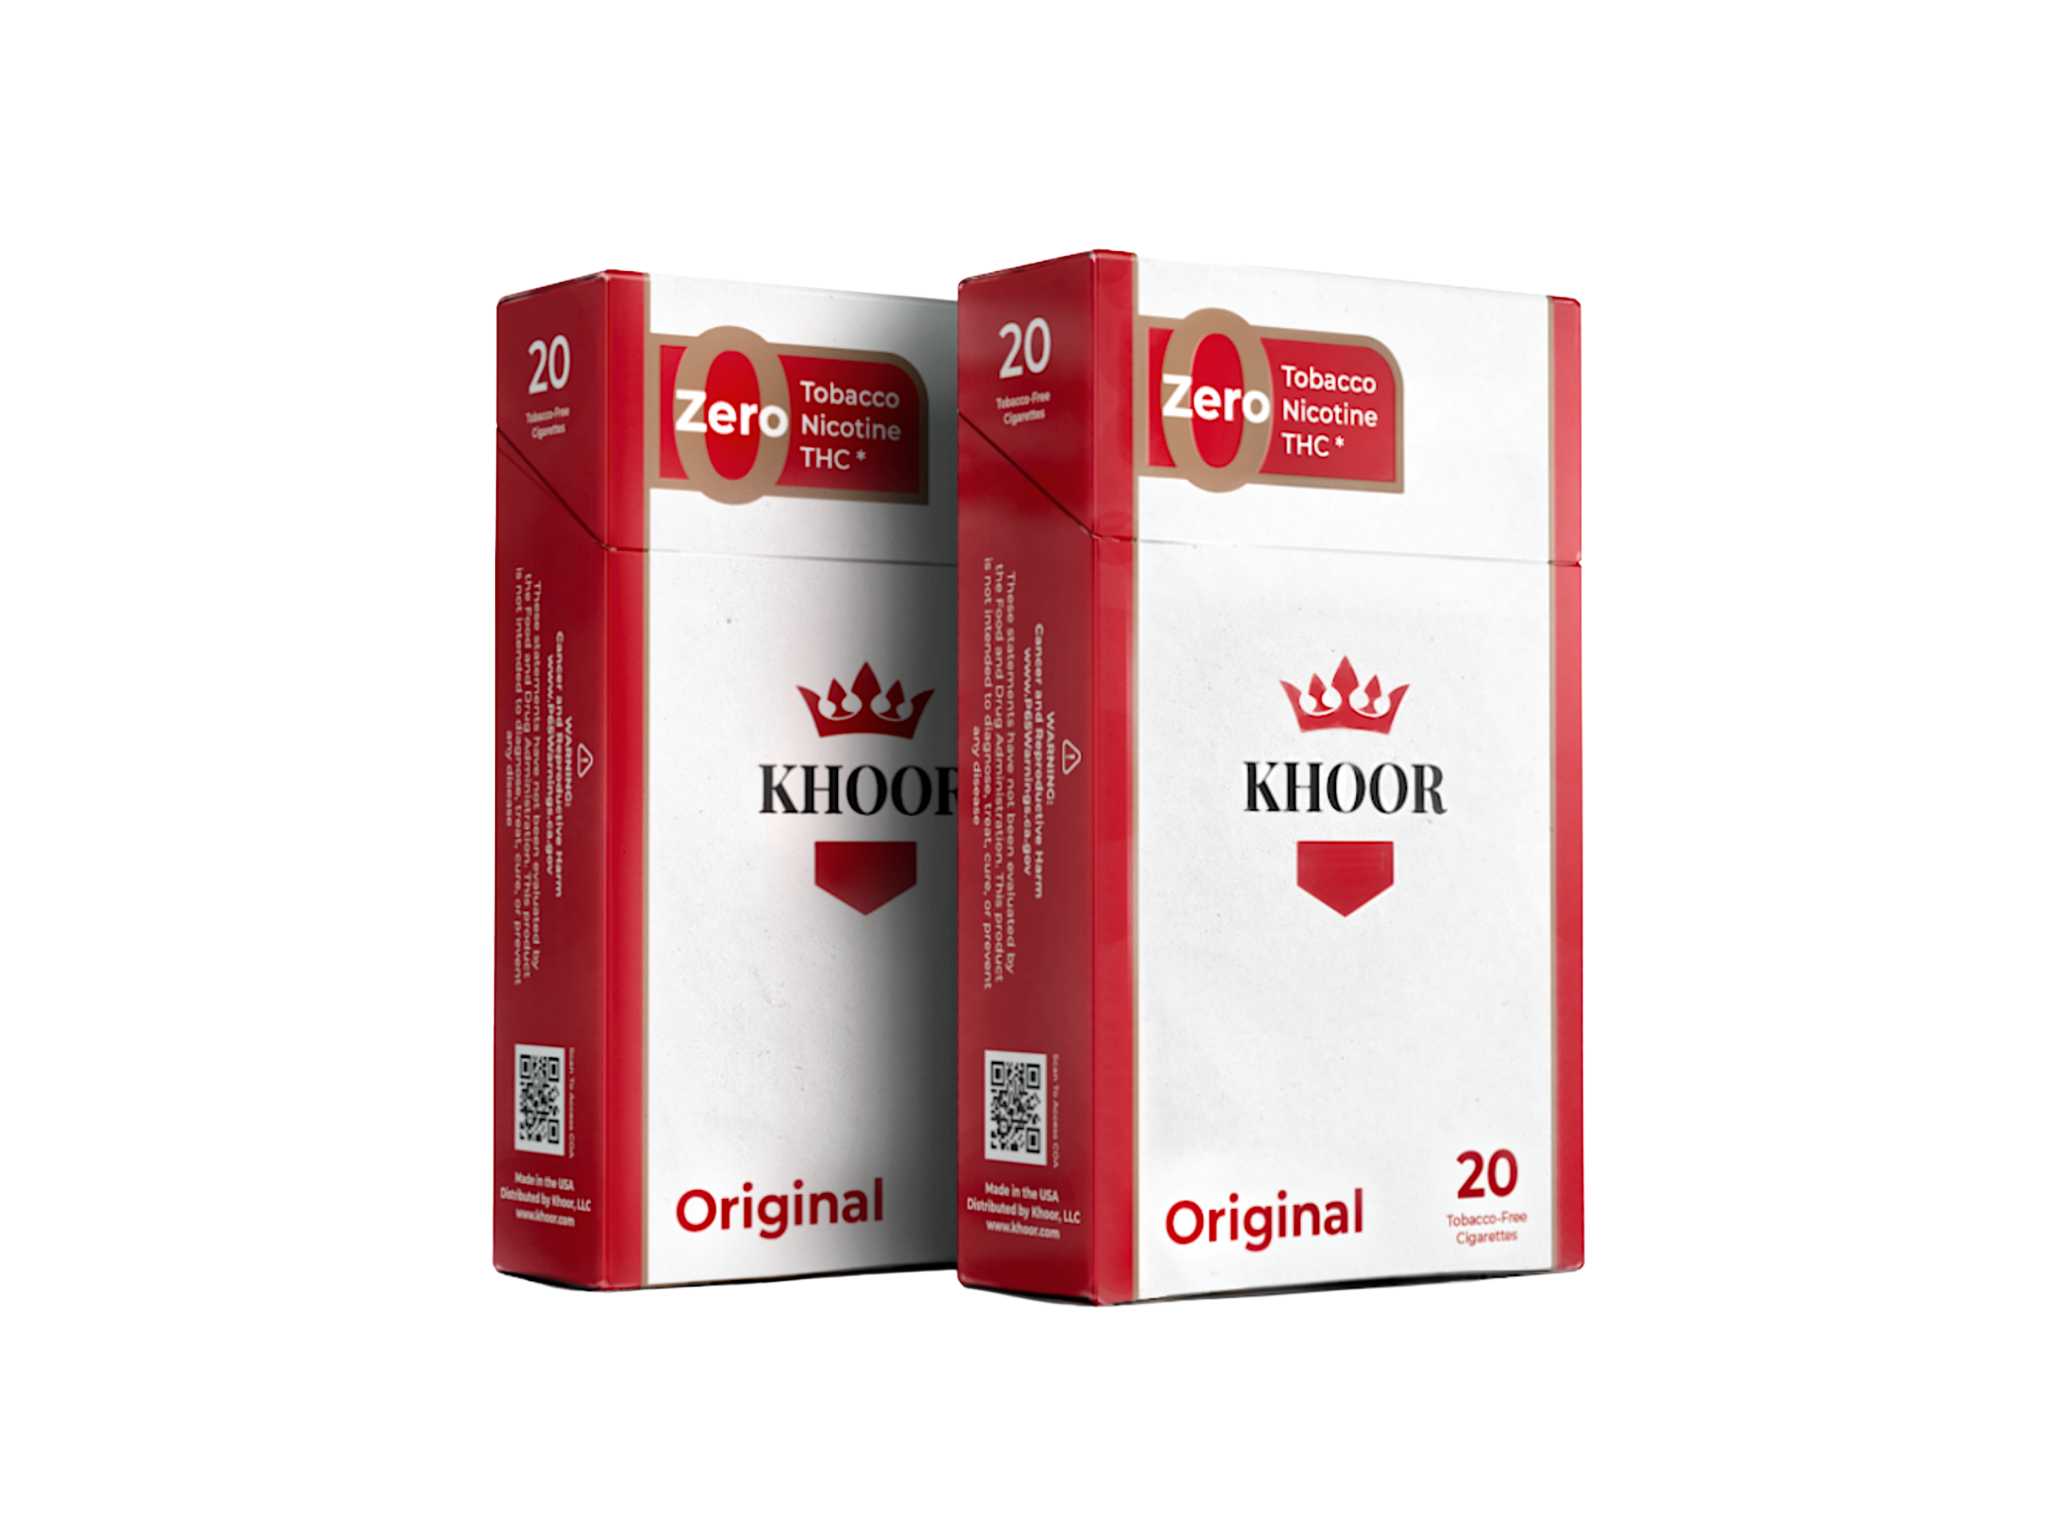 Original Khoor Cigarette